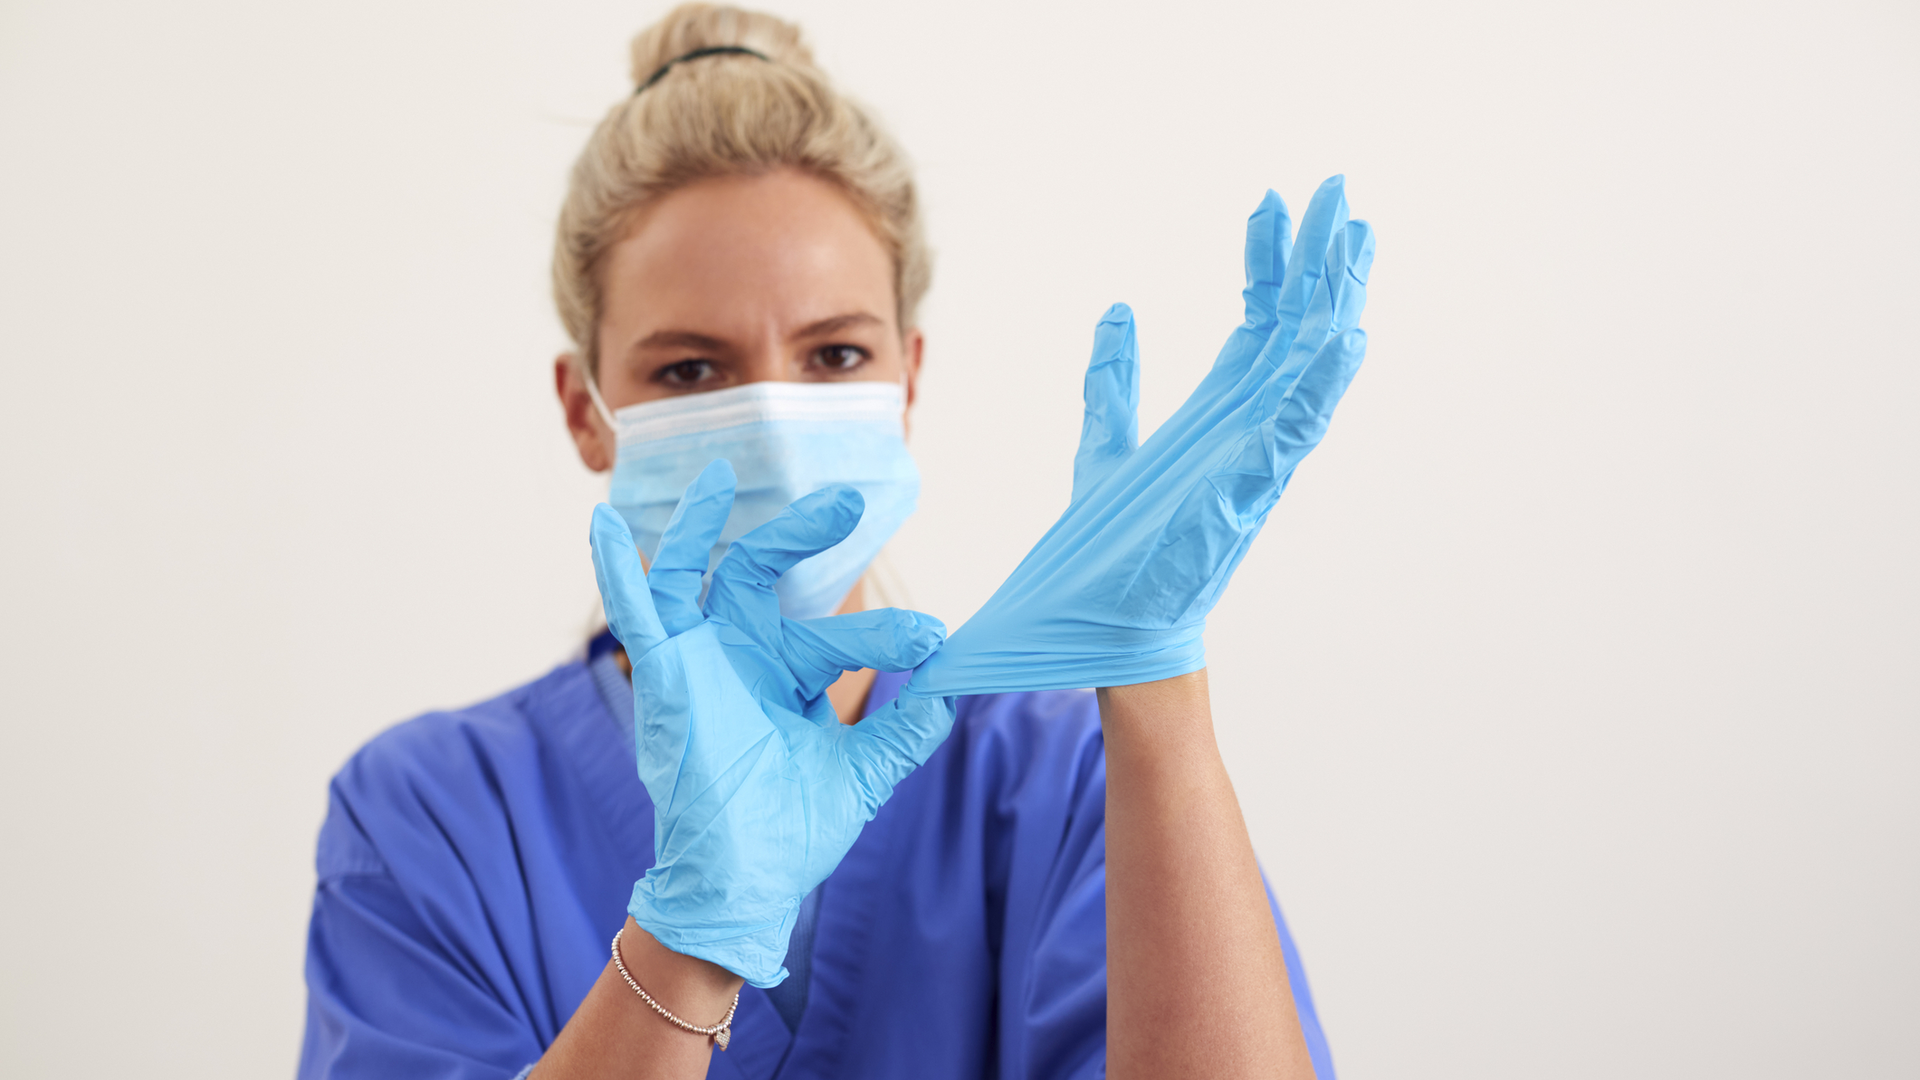 Надевать стерильные перчатки в случаях. Надеть стерильные перчатки. Надевание нестерильных перчаток. PPE Gloves on people. Как одевать стерильные перчатки хирургу.